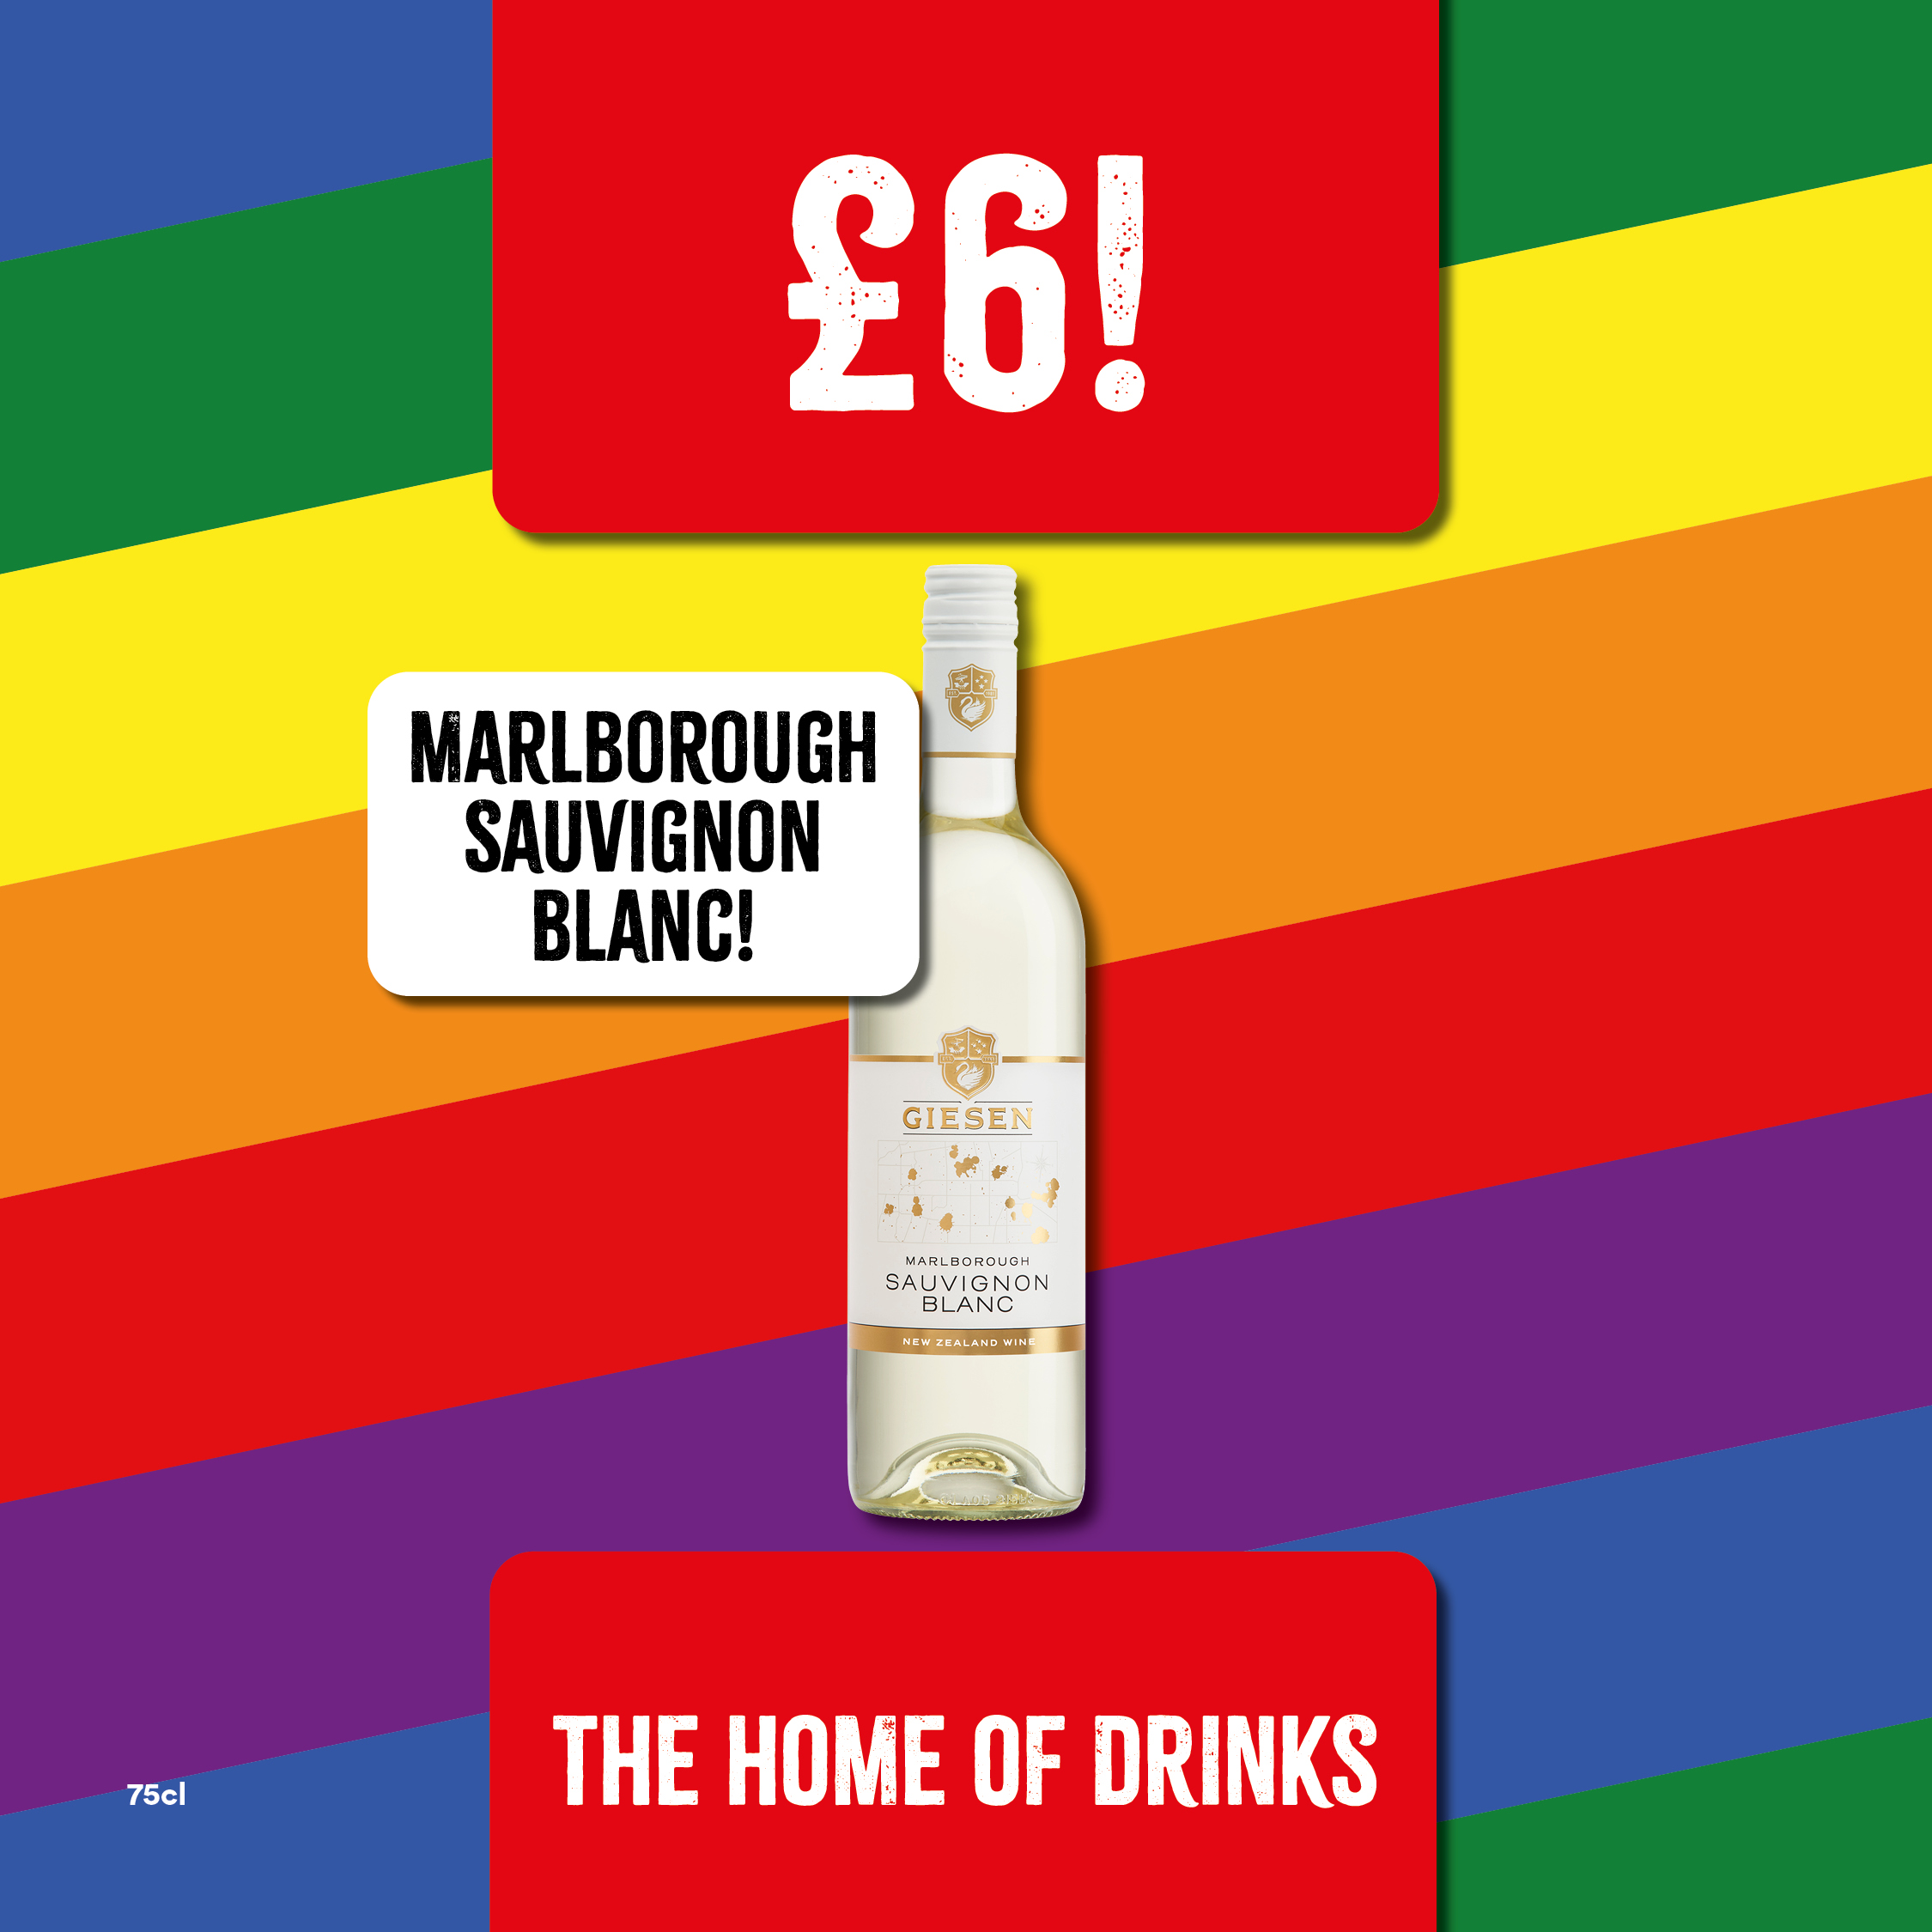 Only £6 Marlborough Sauvignon Blanc Bargain Booze Select Convenience Accrington 01254 381783